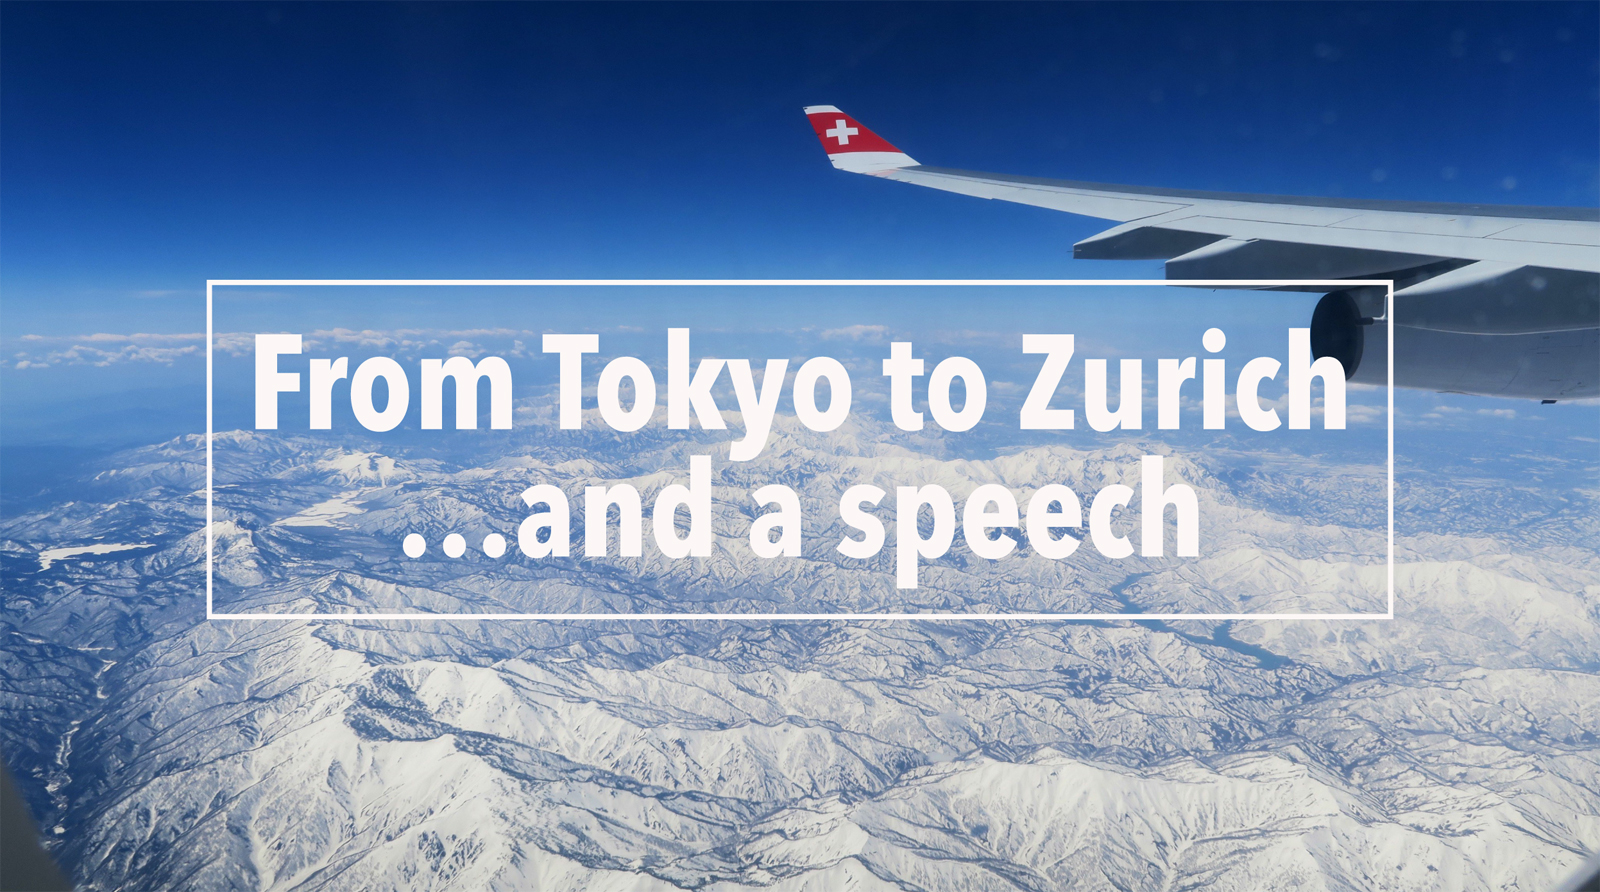 Von Tokio nach Zürich mit den japanischen Alpen im Blickfeld.